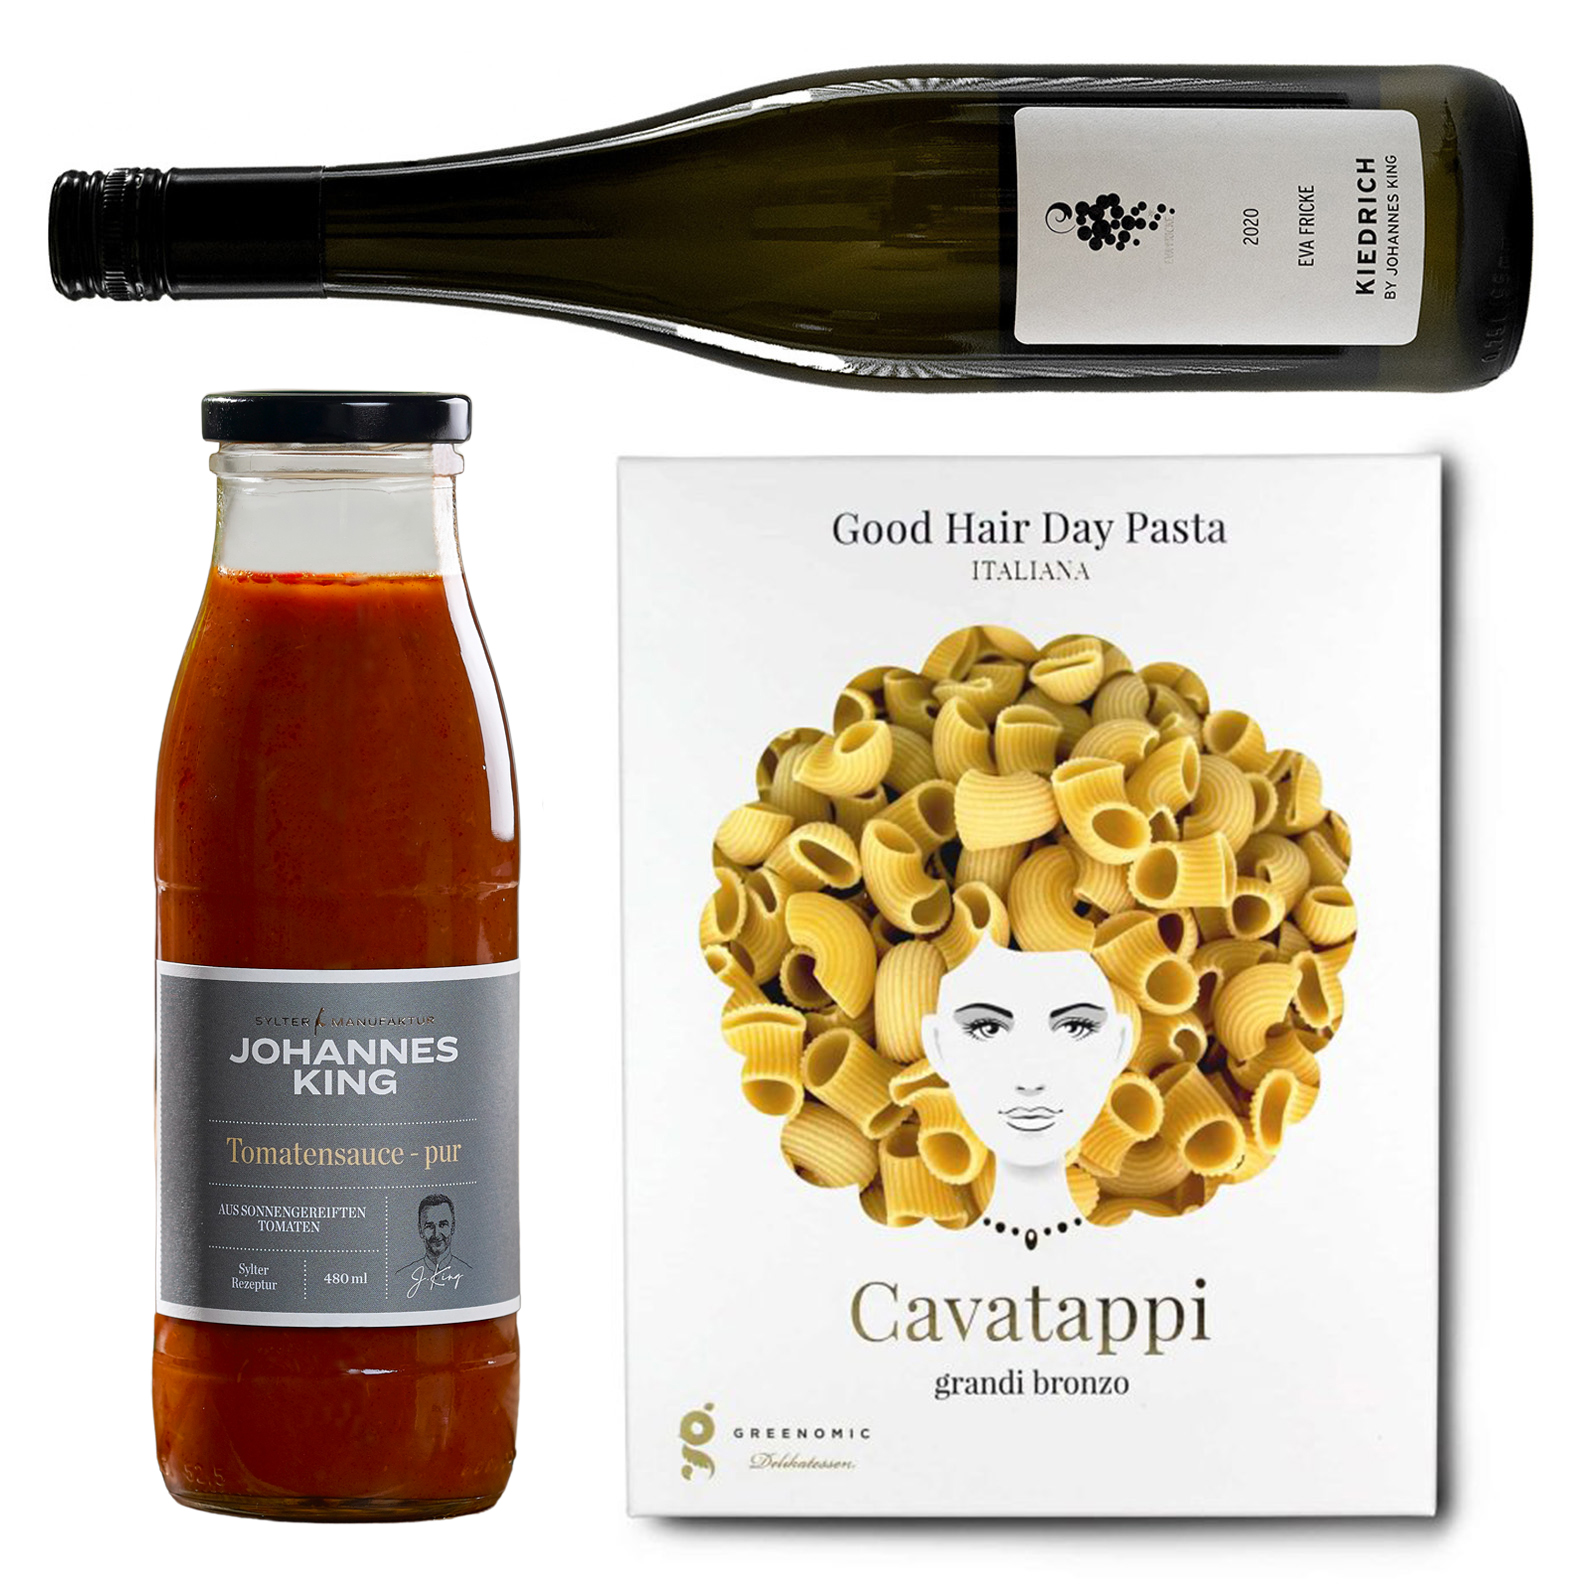 Dinner for 4 *Cavatappi & Vino*